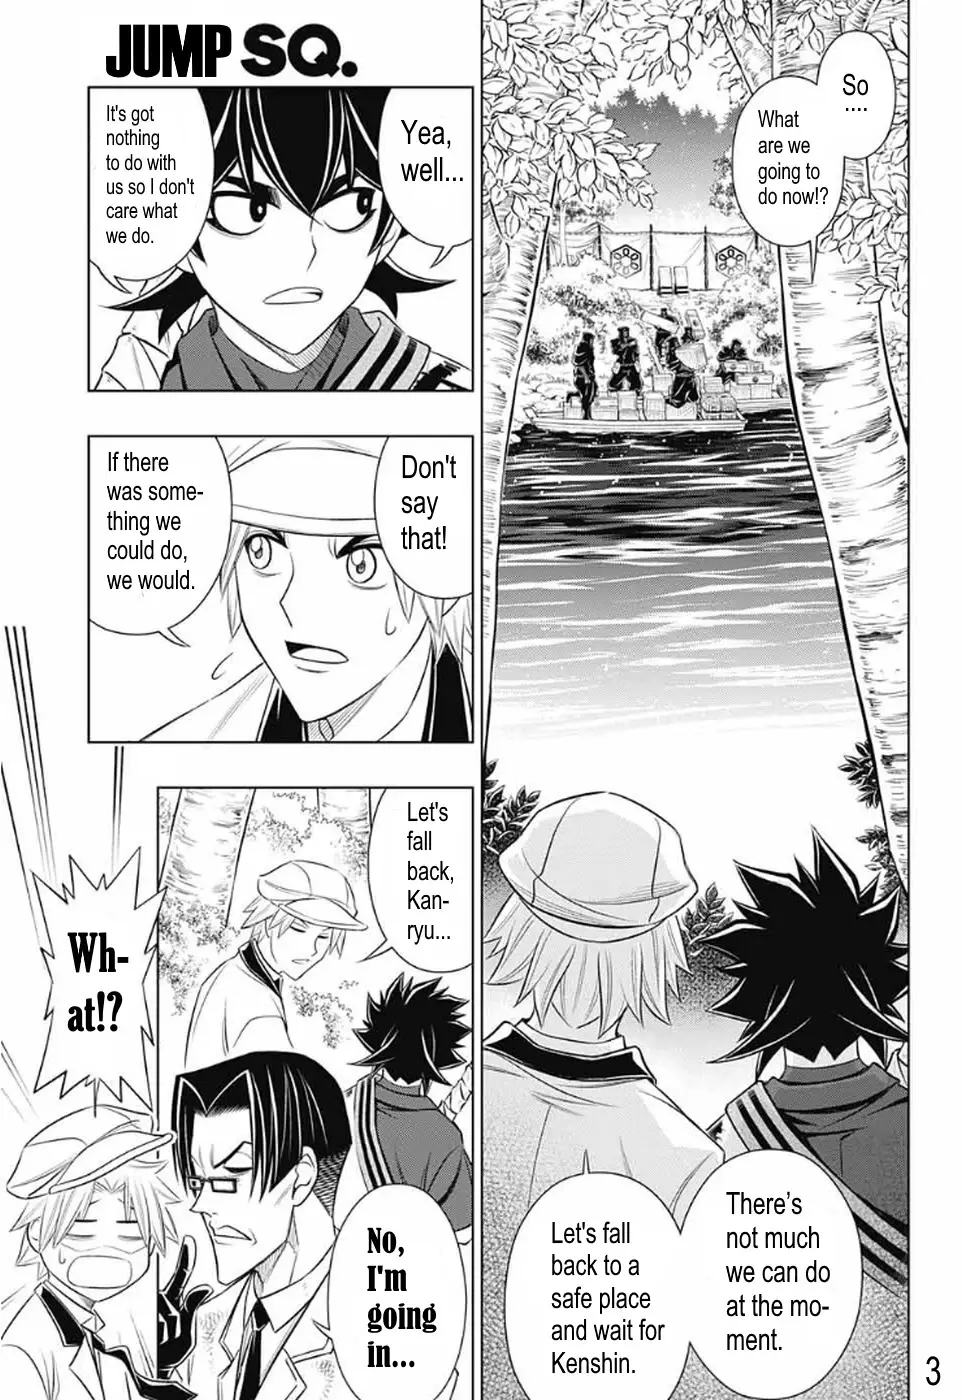 Rurouni Kenshin: Hokkaido Arc - 29 page 3